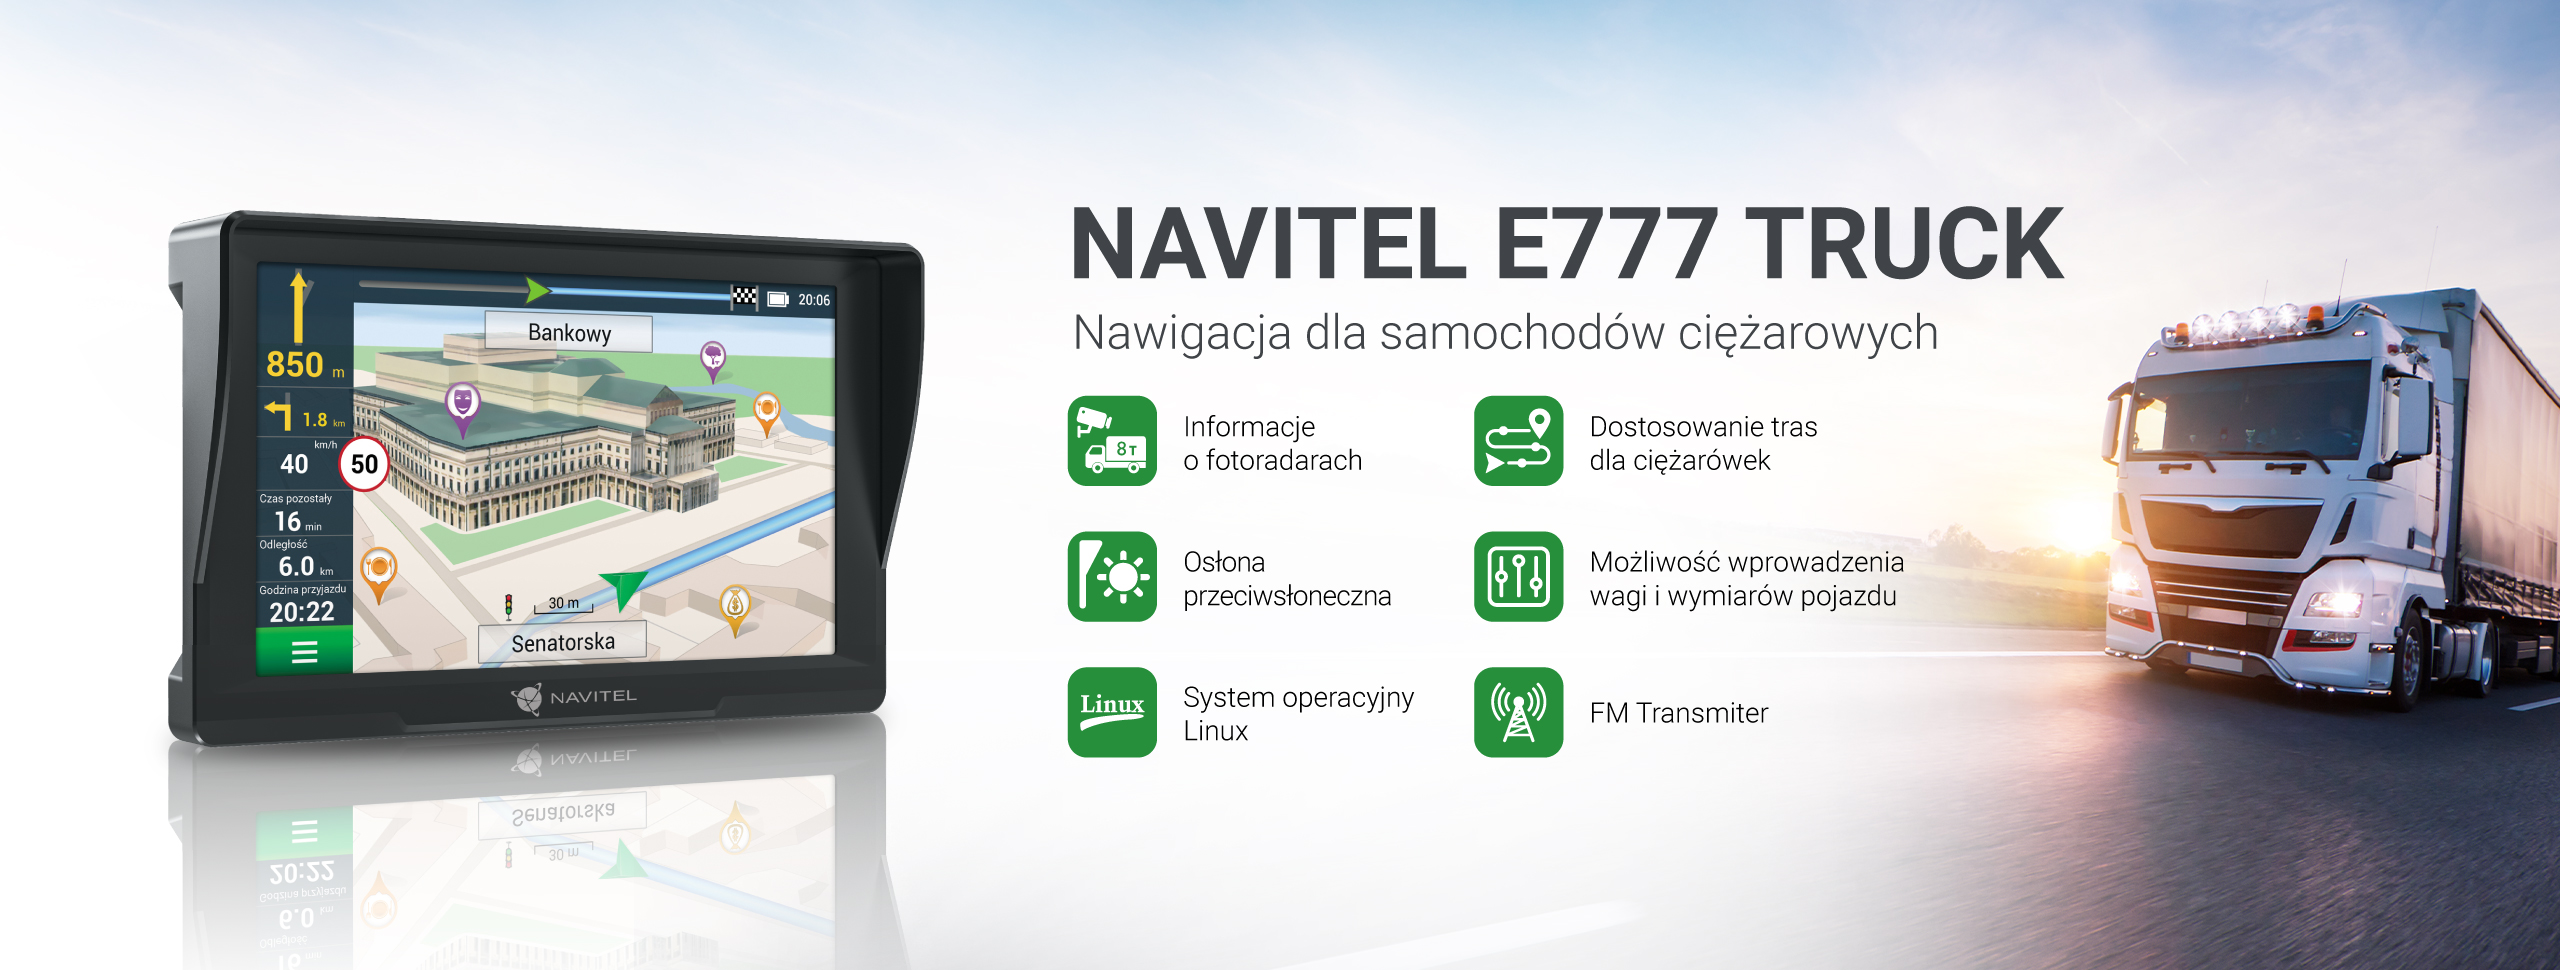 NAVITEL E777 TRUCK – nawigacja GPS dedykowana dla samochodów ciężarowych 